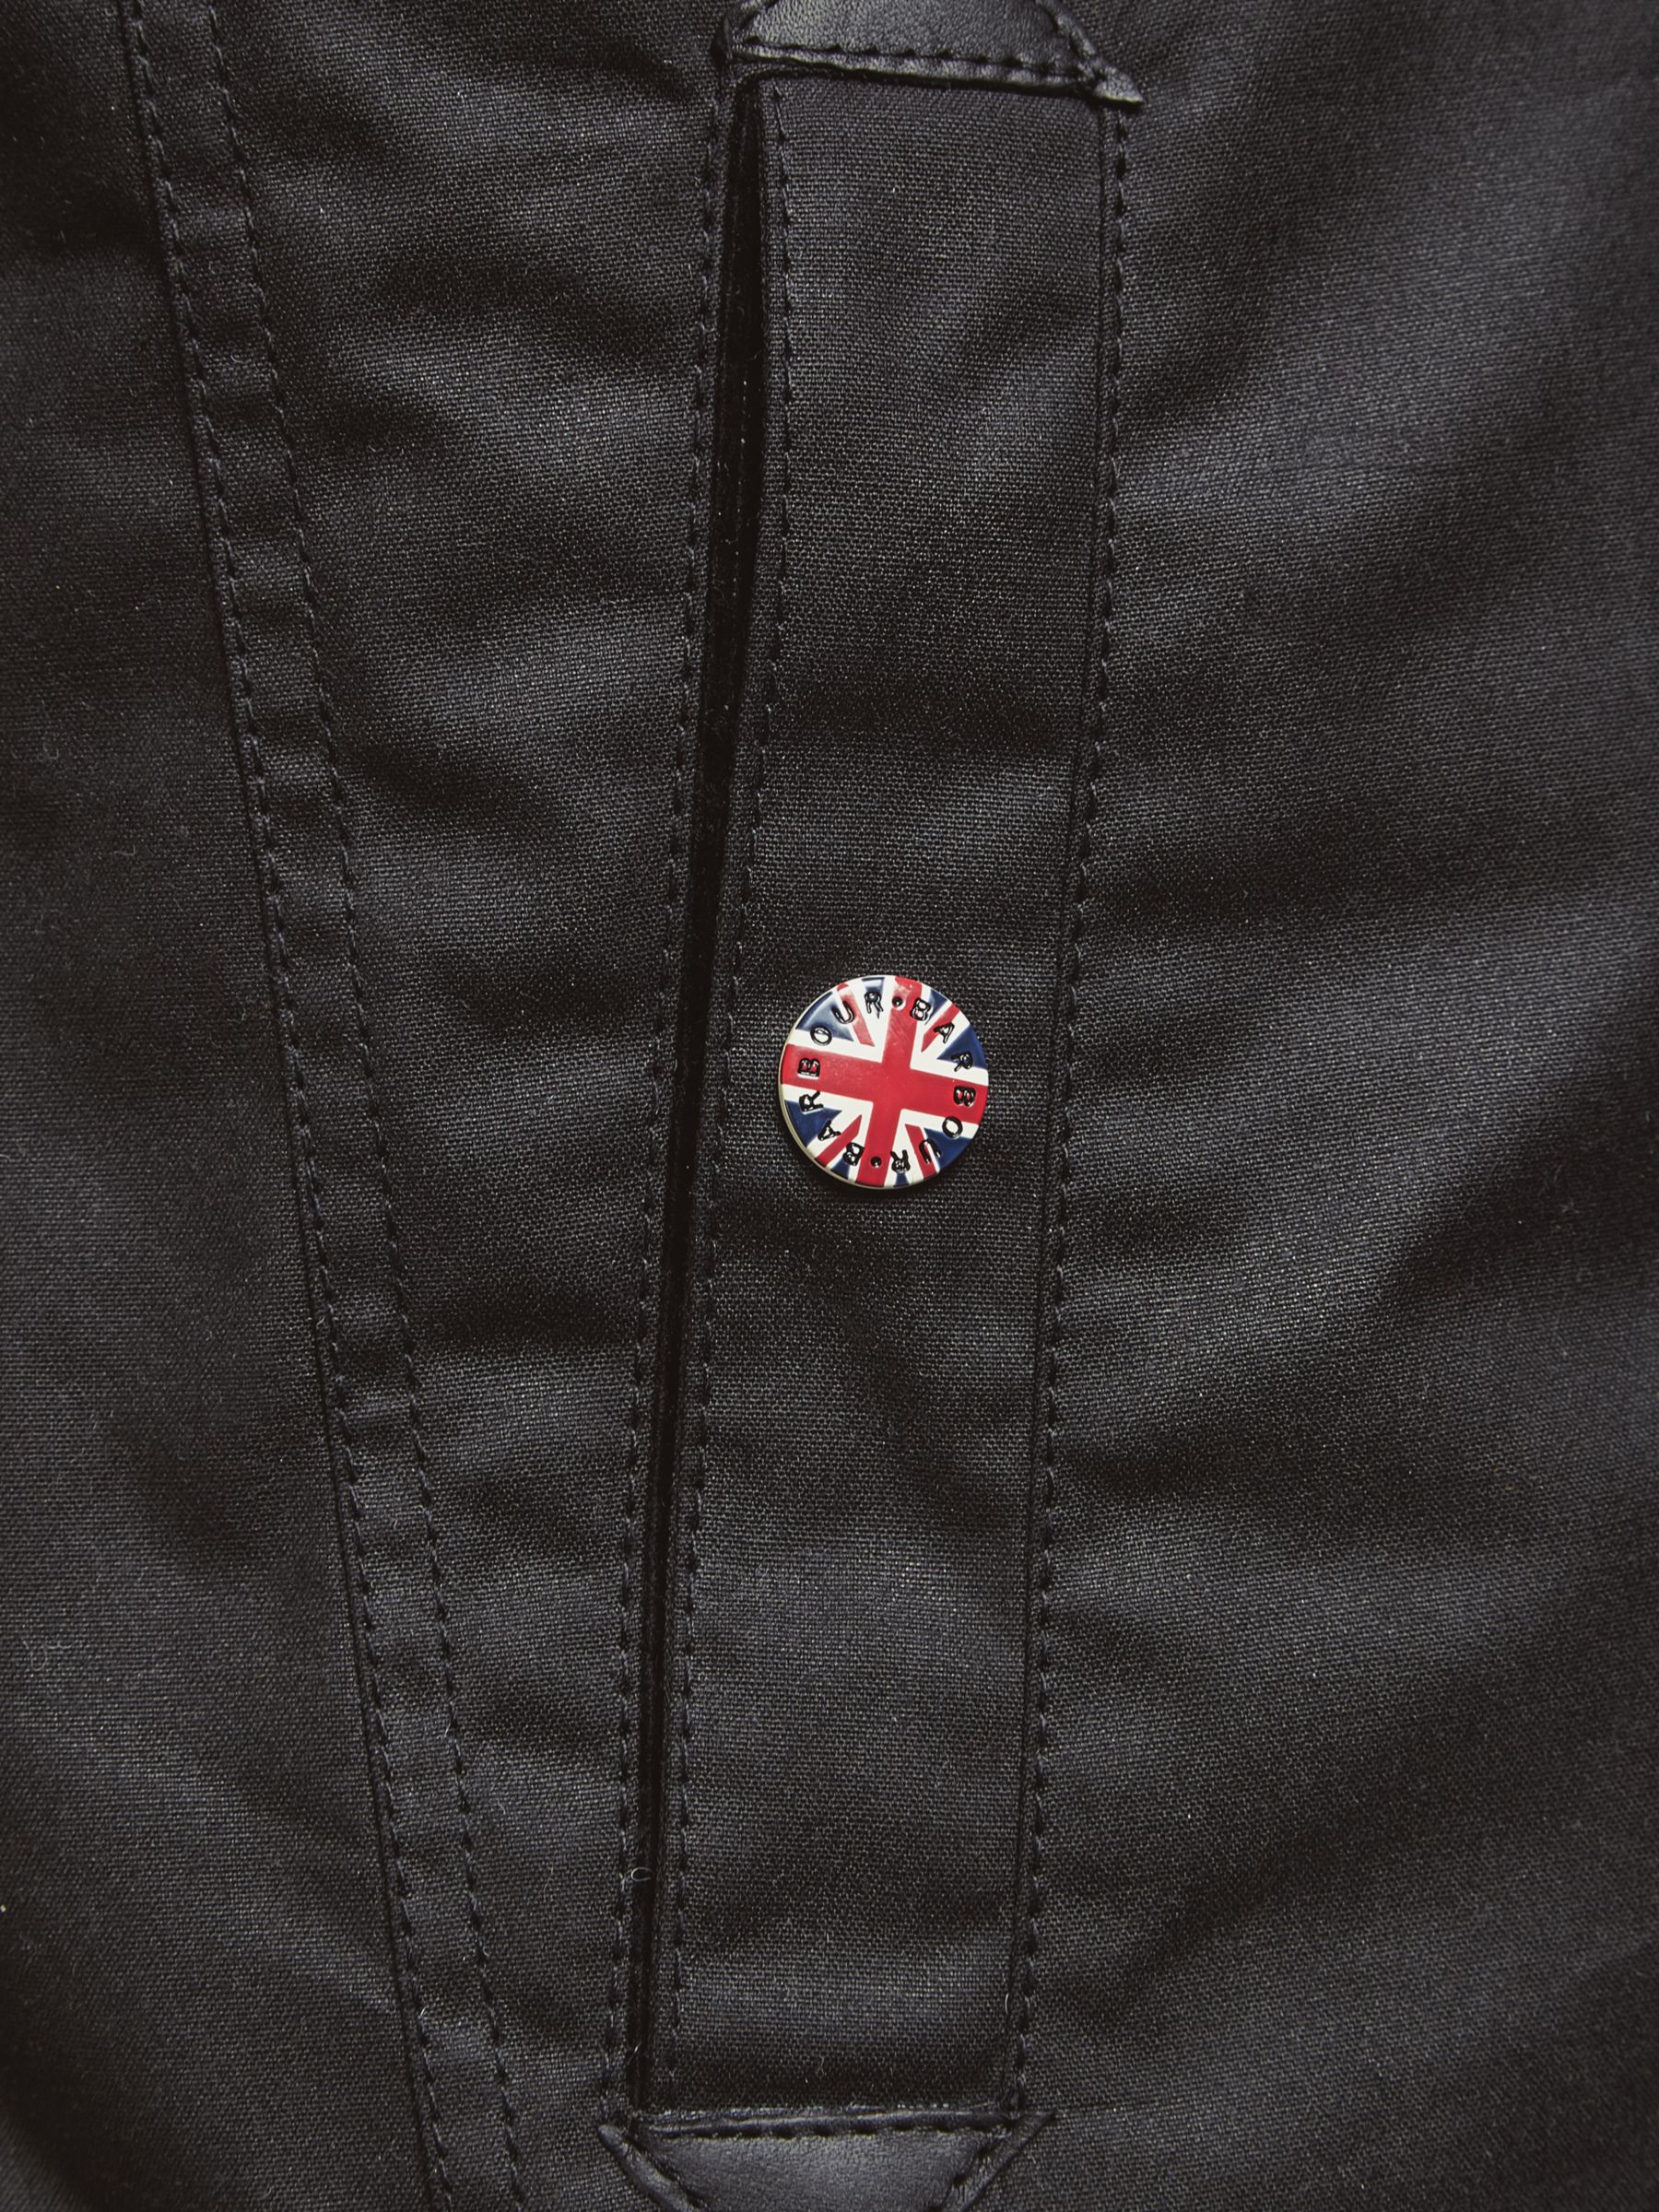 barbour bonner jacket